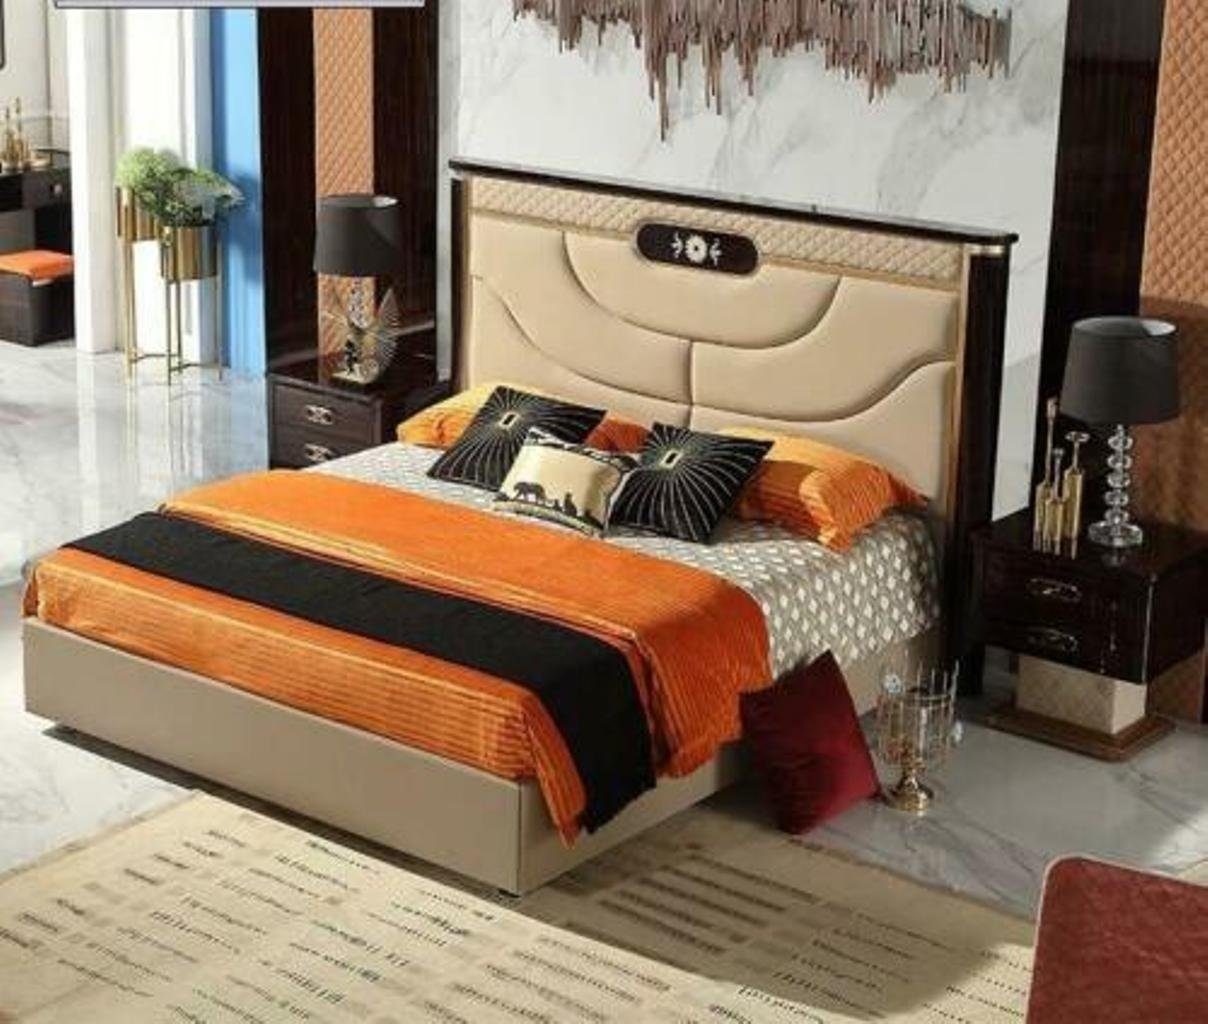 JVmoebel Lederbett, Polster Ehe Schlaf Hotel Design Luxus Leder Betten Doppel Holz Bett